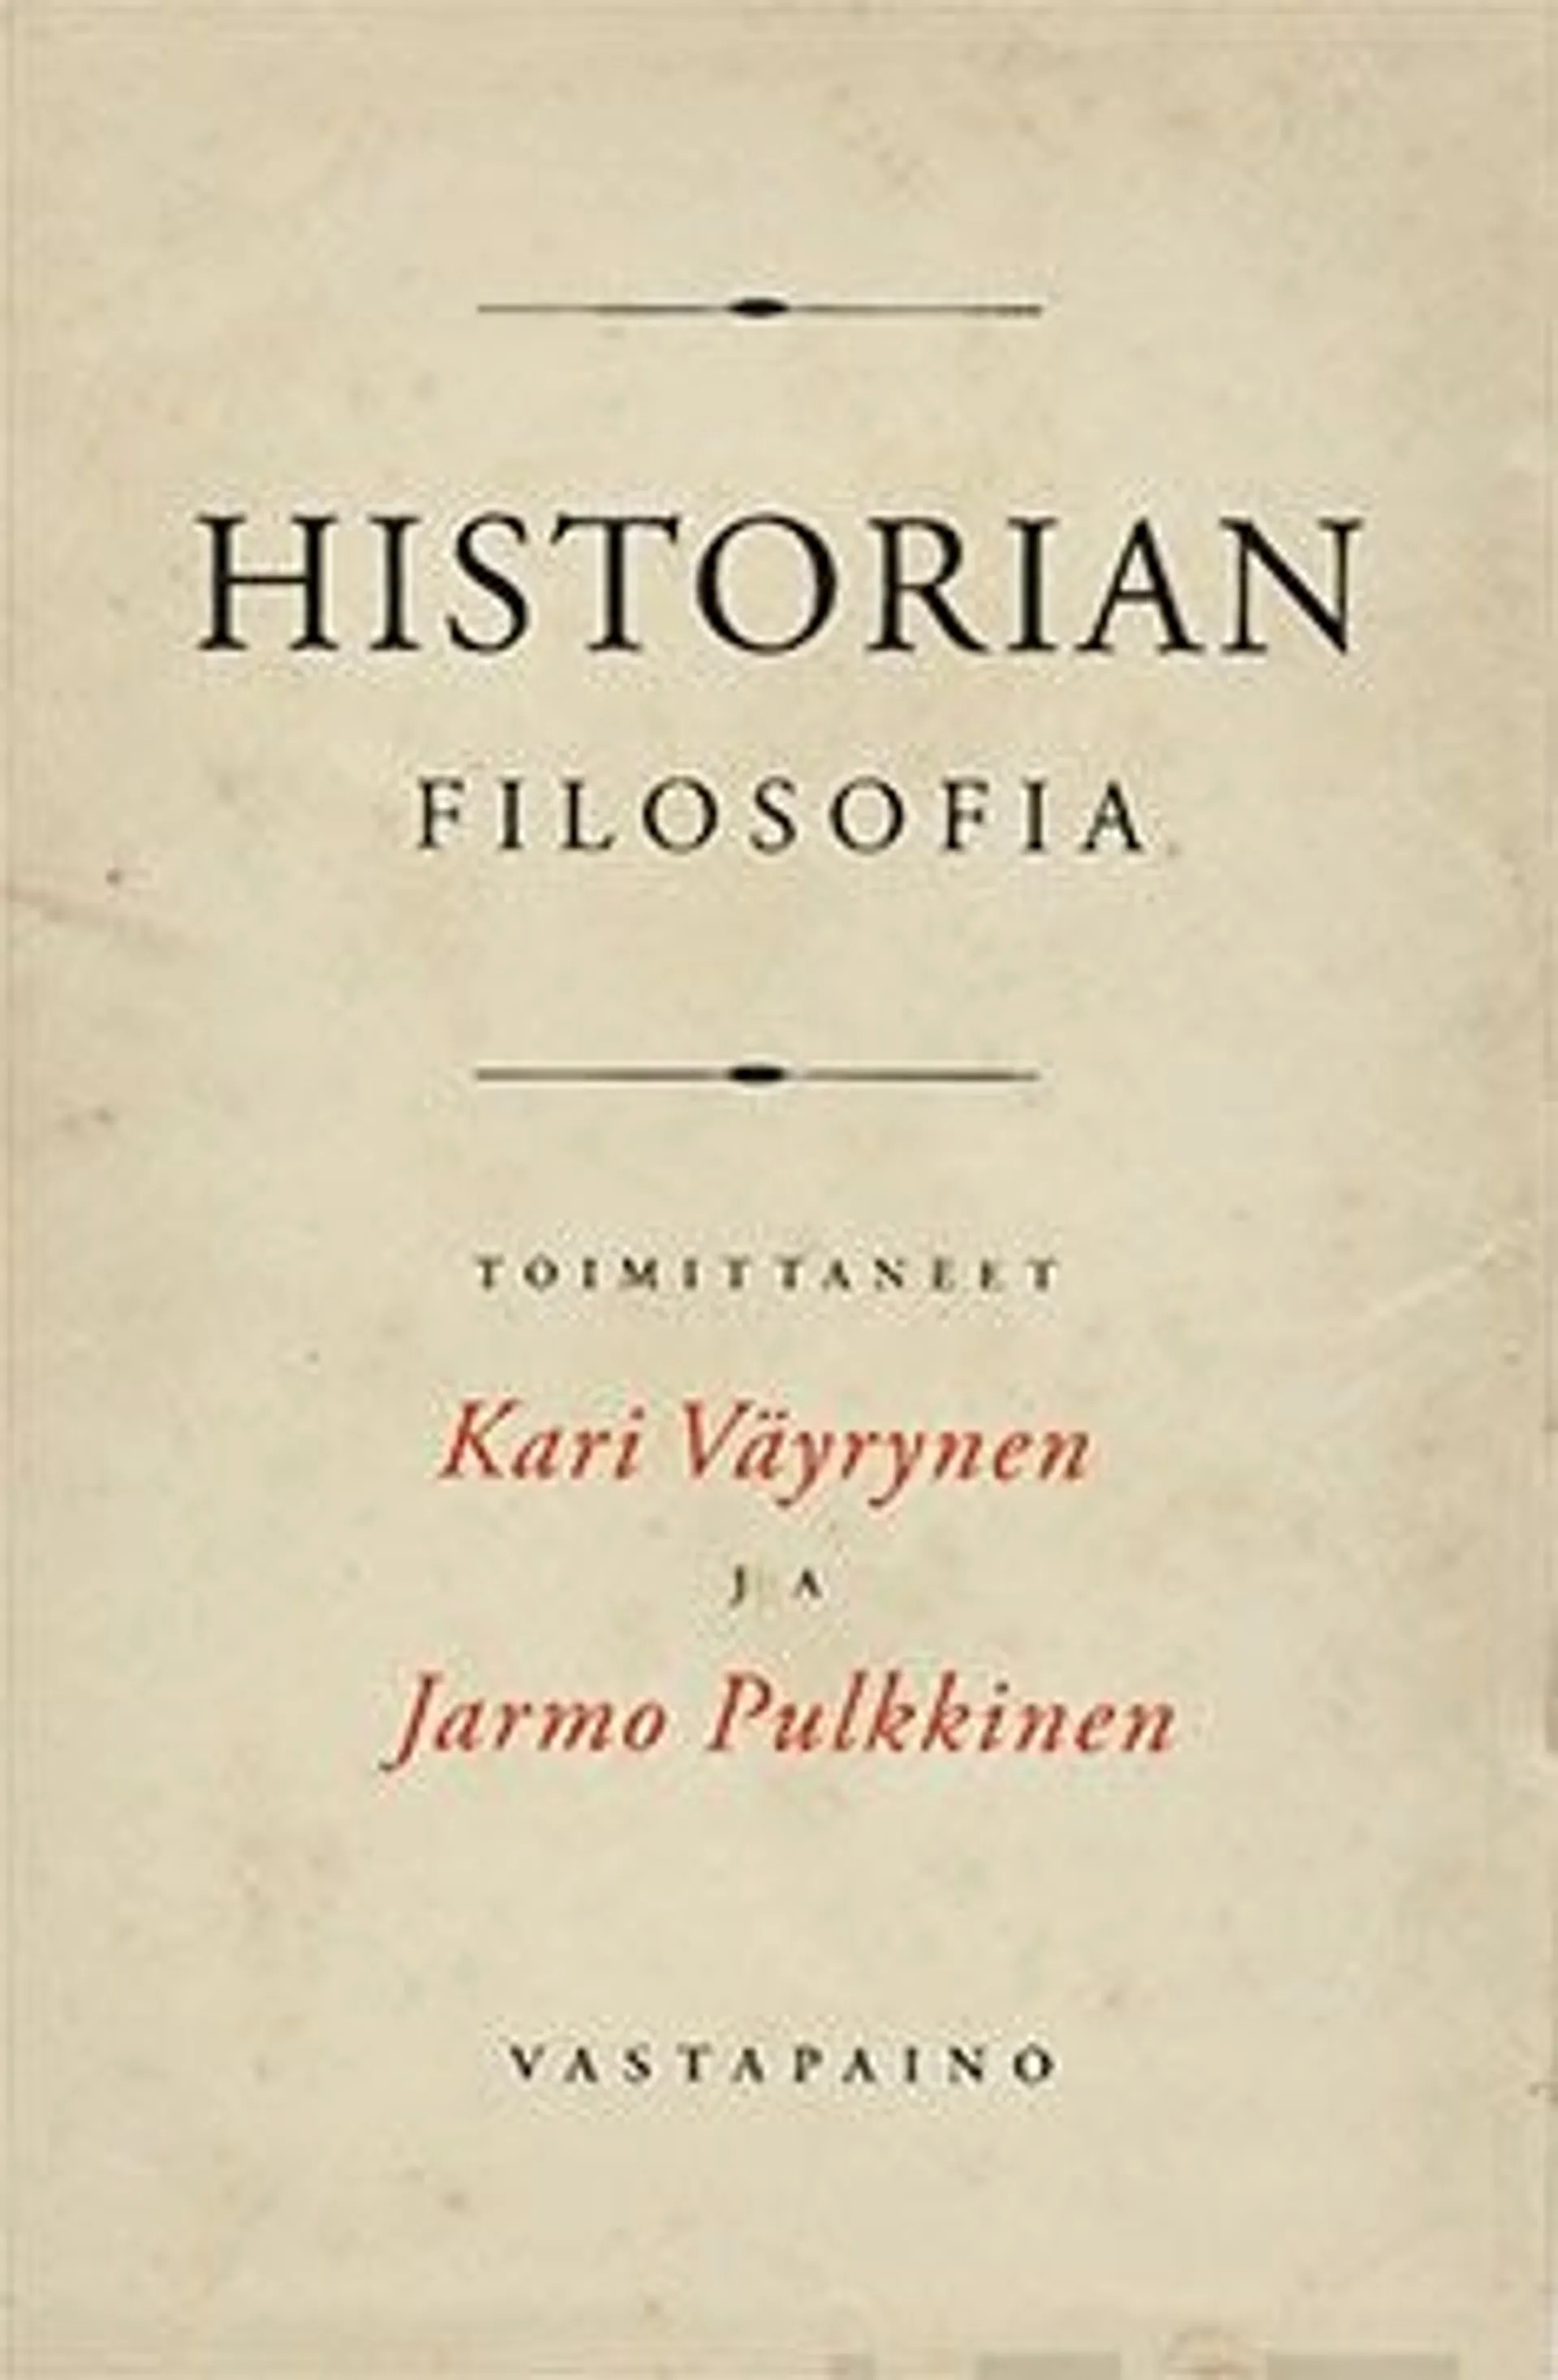 Historianfilosofia - Klassiset ajattelijat antiikista nykyisyyteen